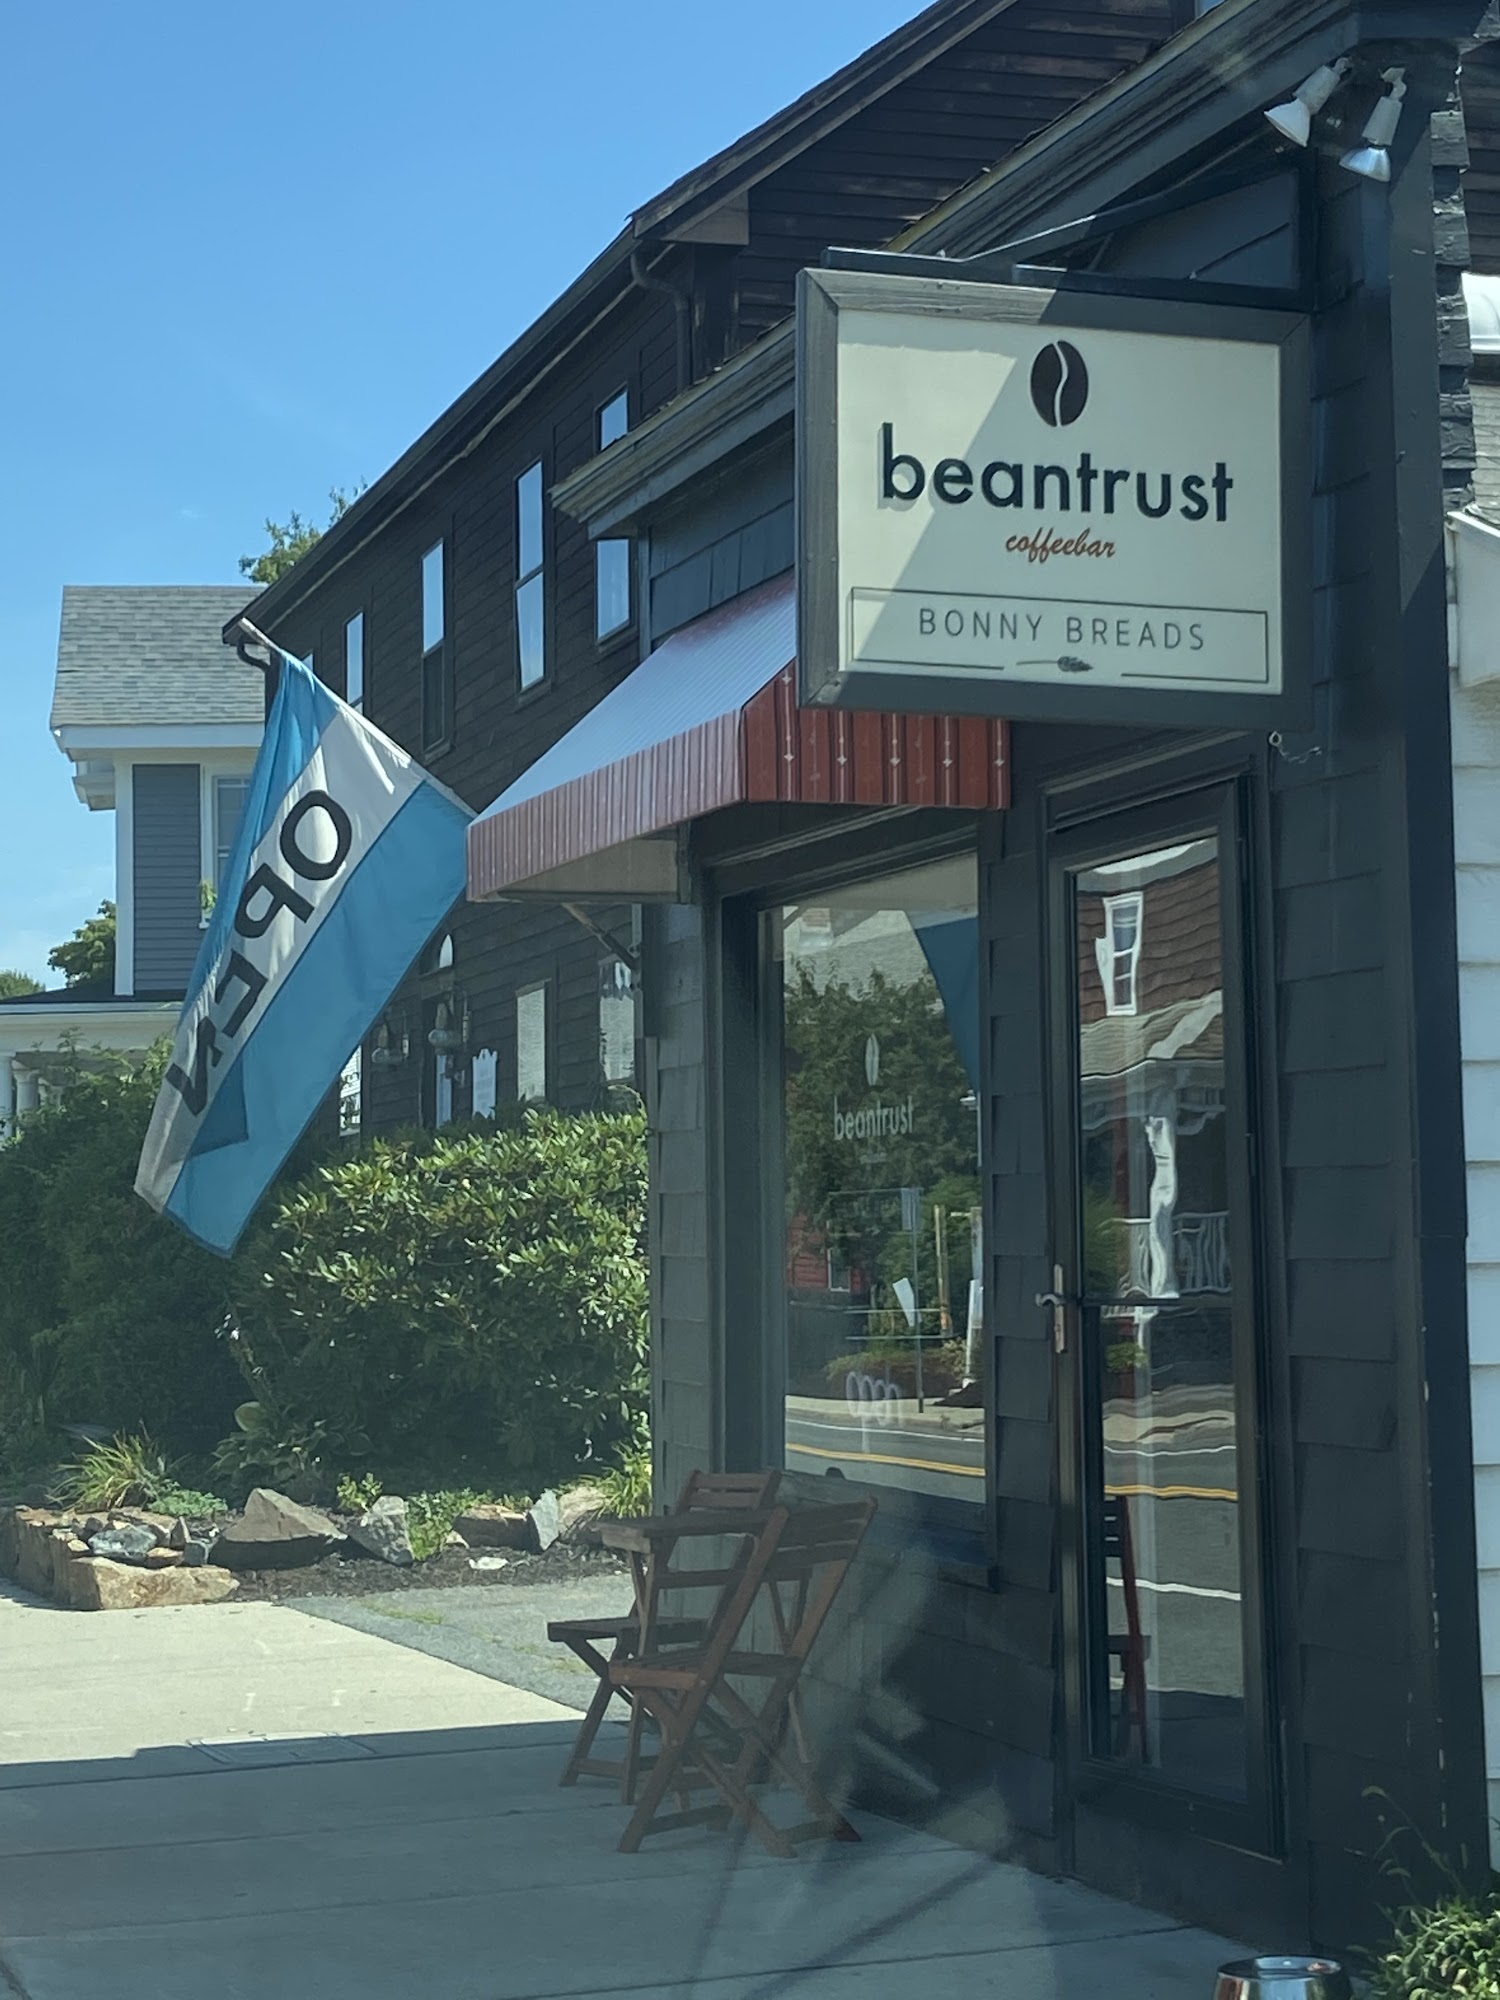 Beantrust Coffeebar